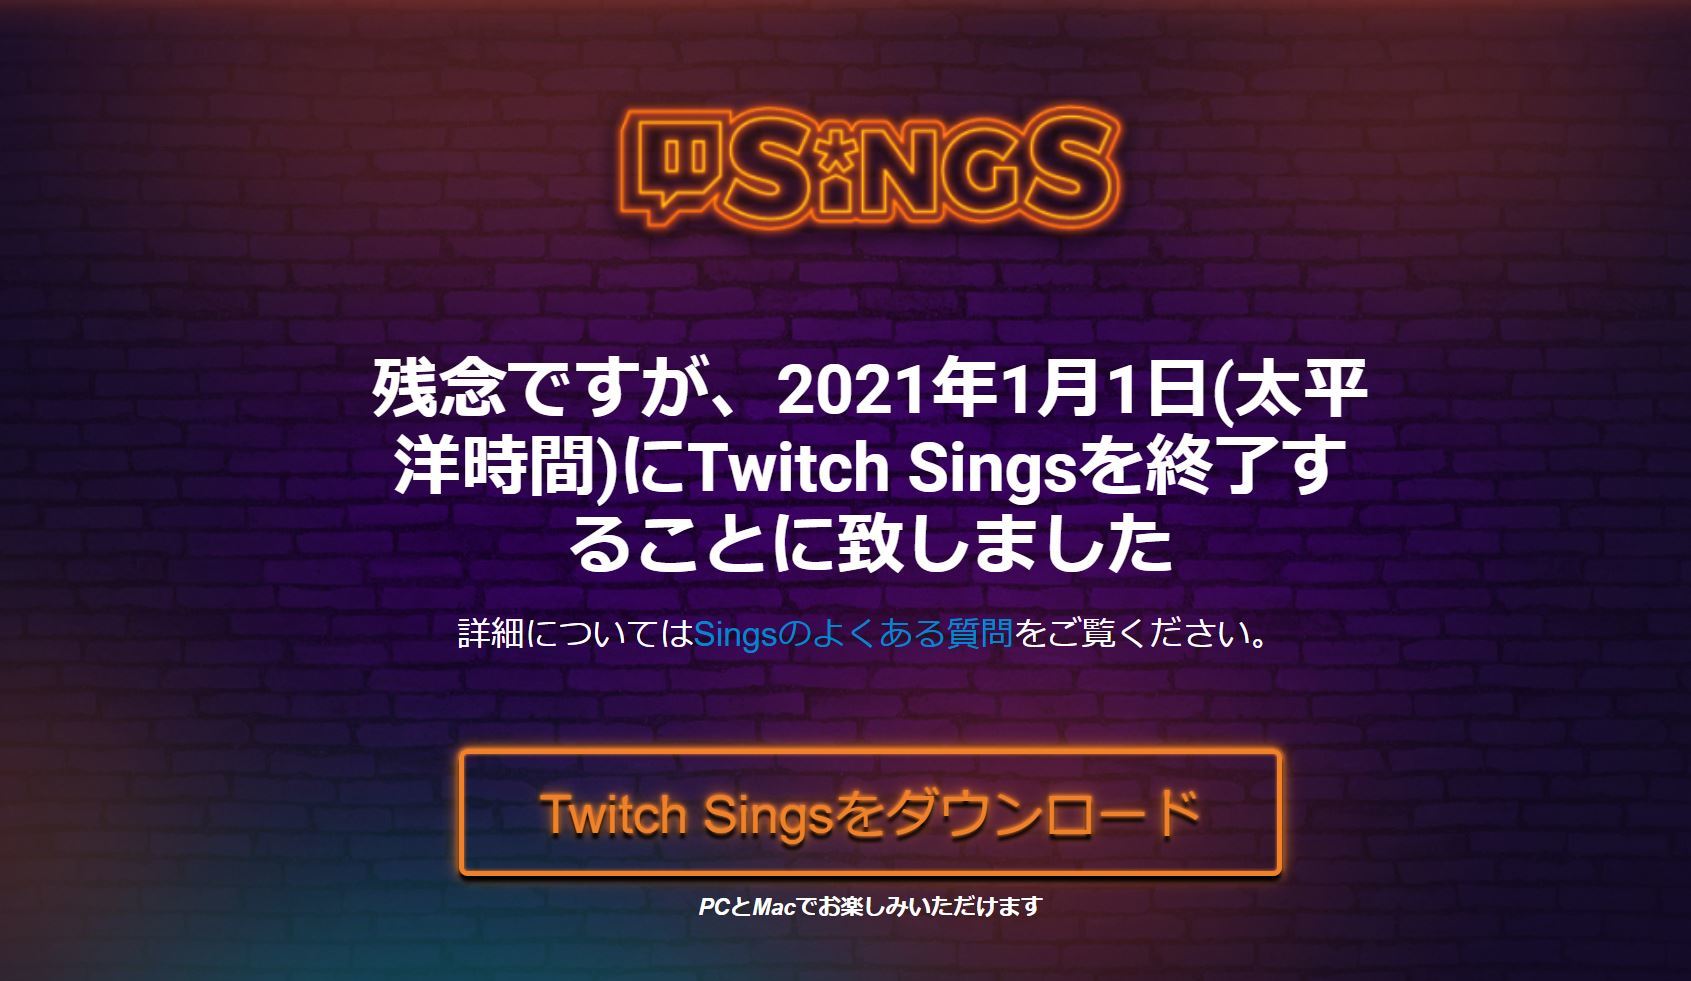 ライブカラオケサービス「Twitch Sings」、2021年1月1日終了へ